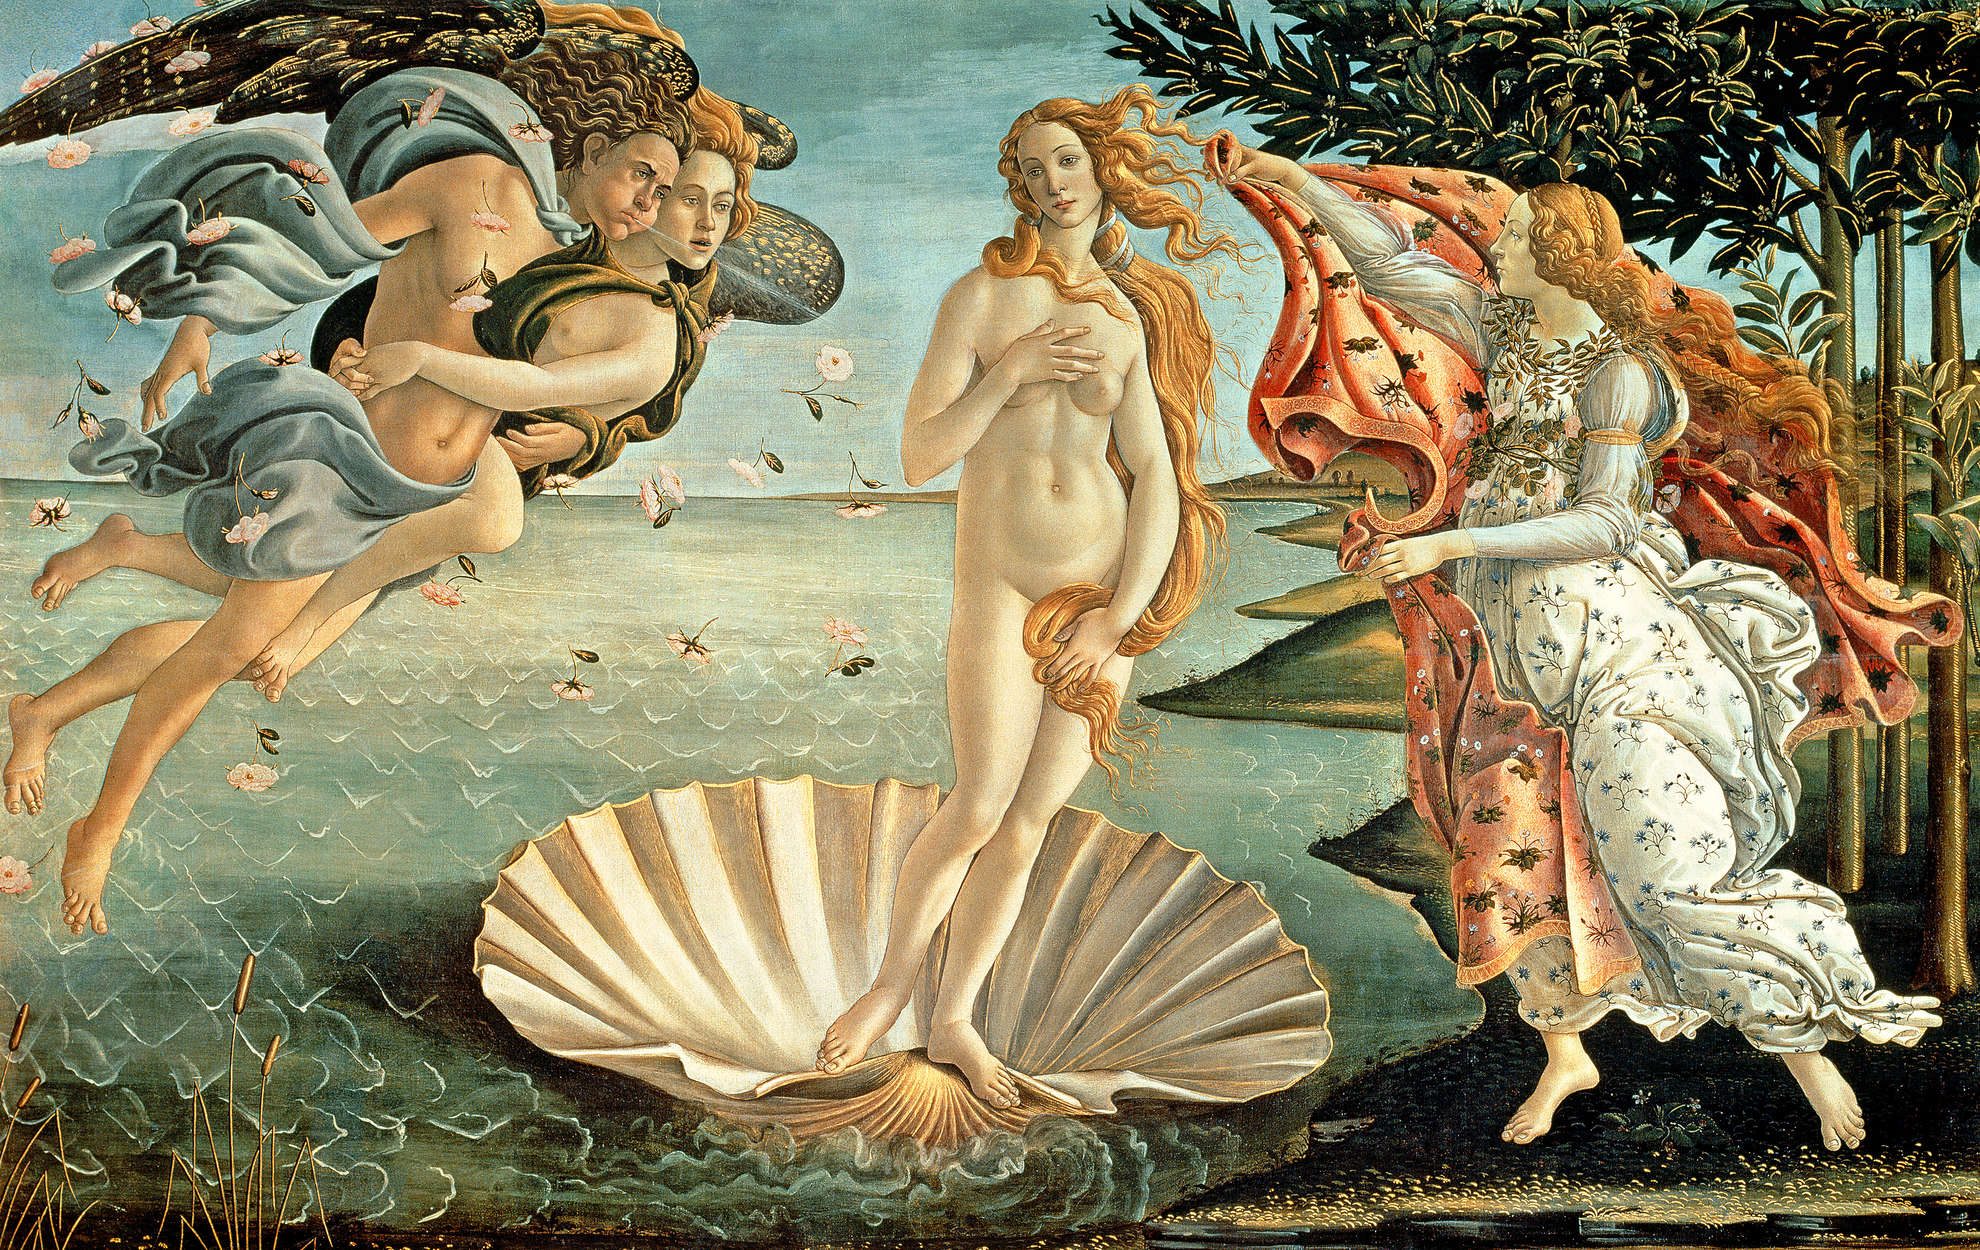             Mural "El nacimiento de Venus" de Sandro Botticelli
        